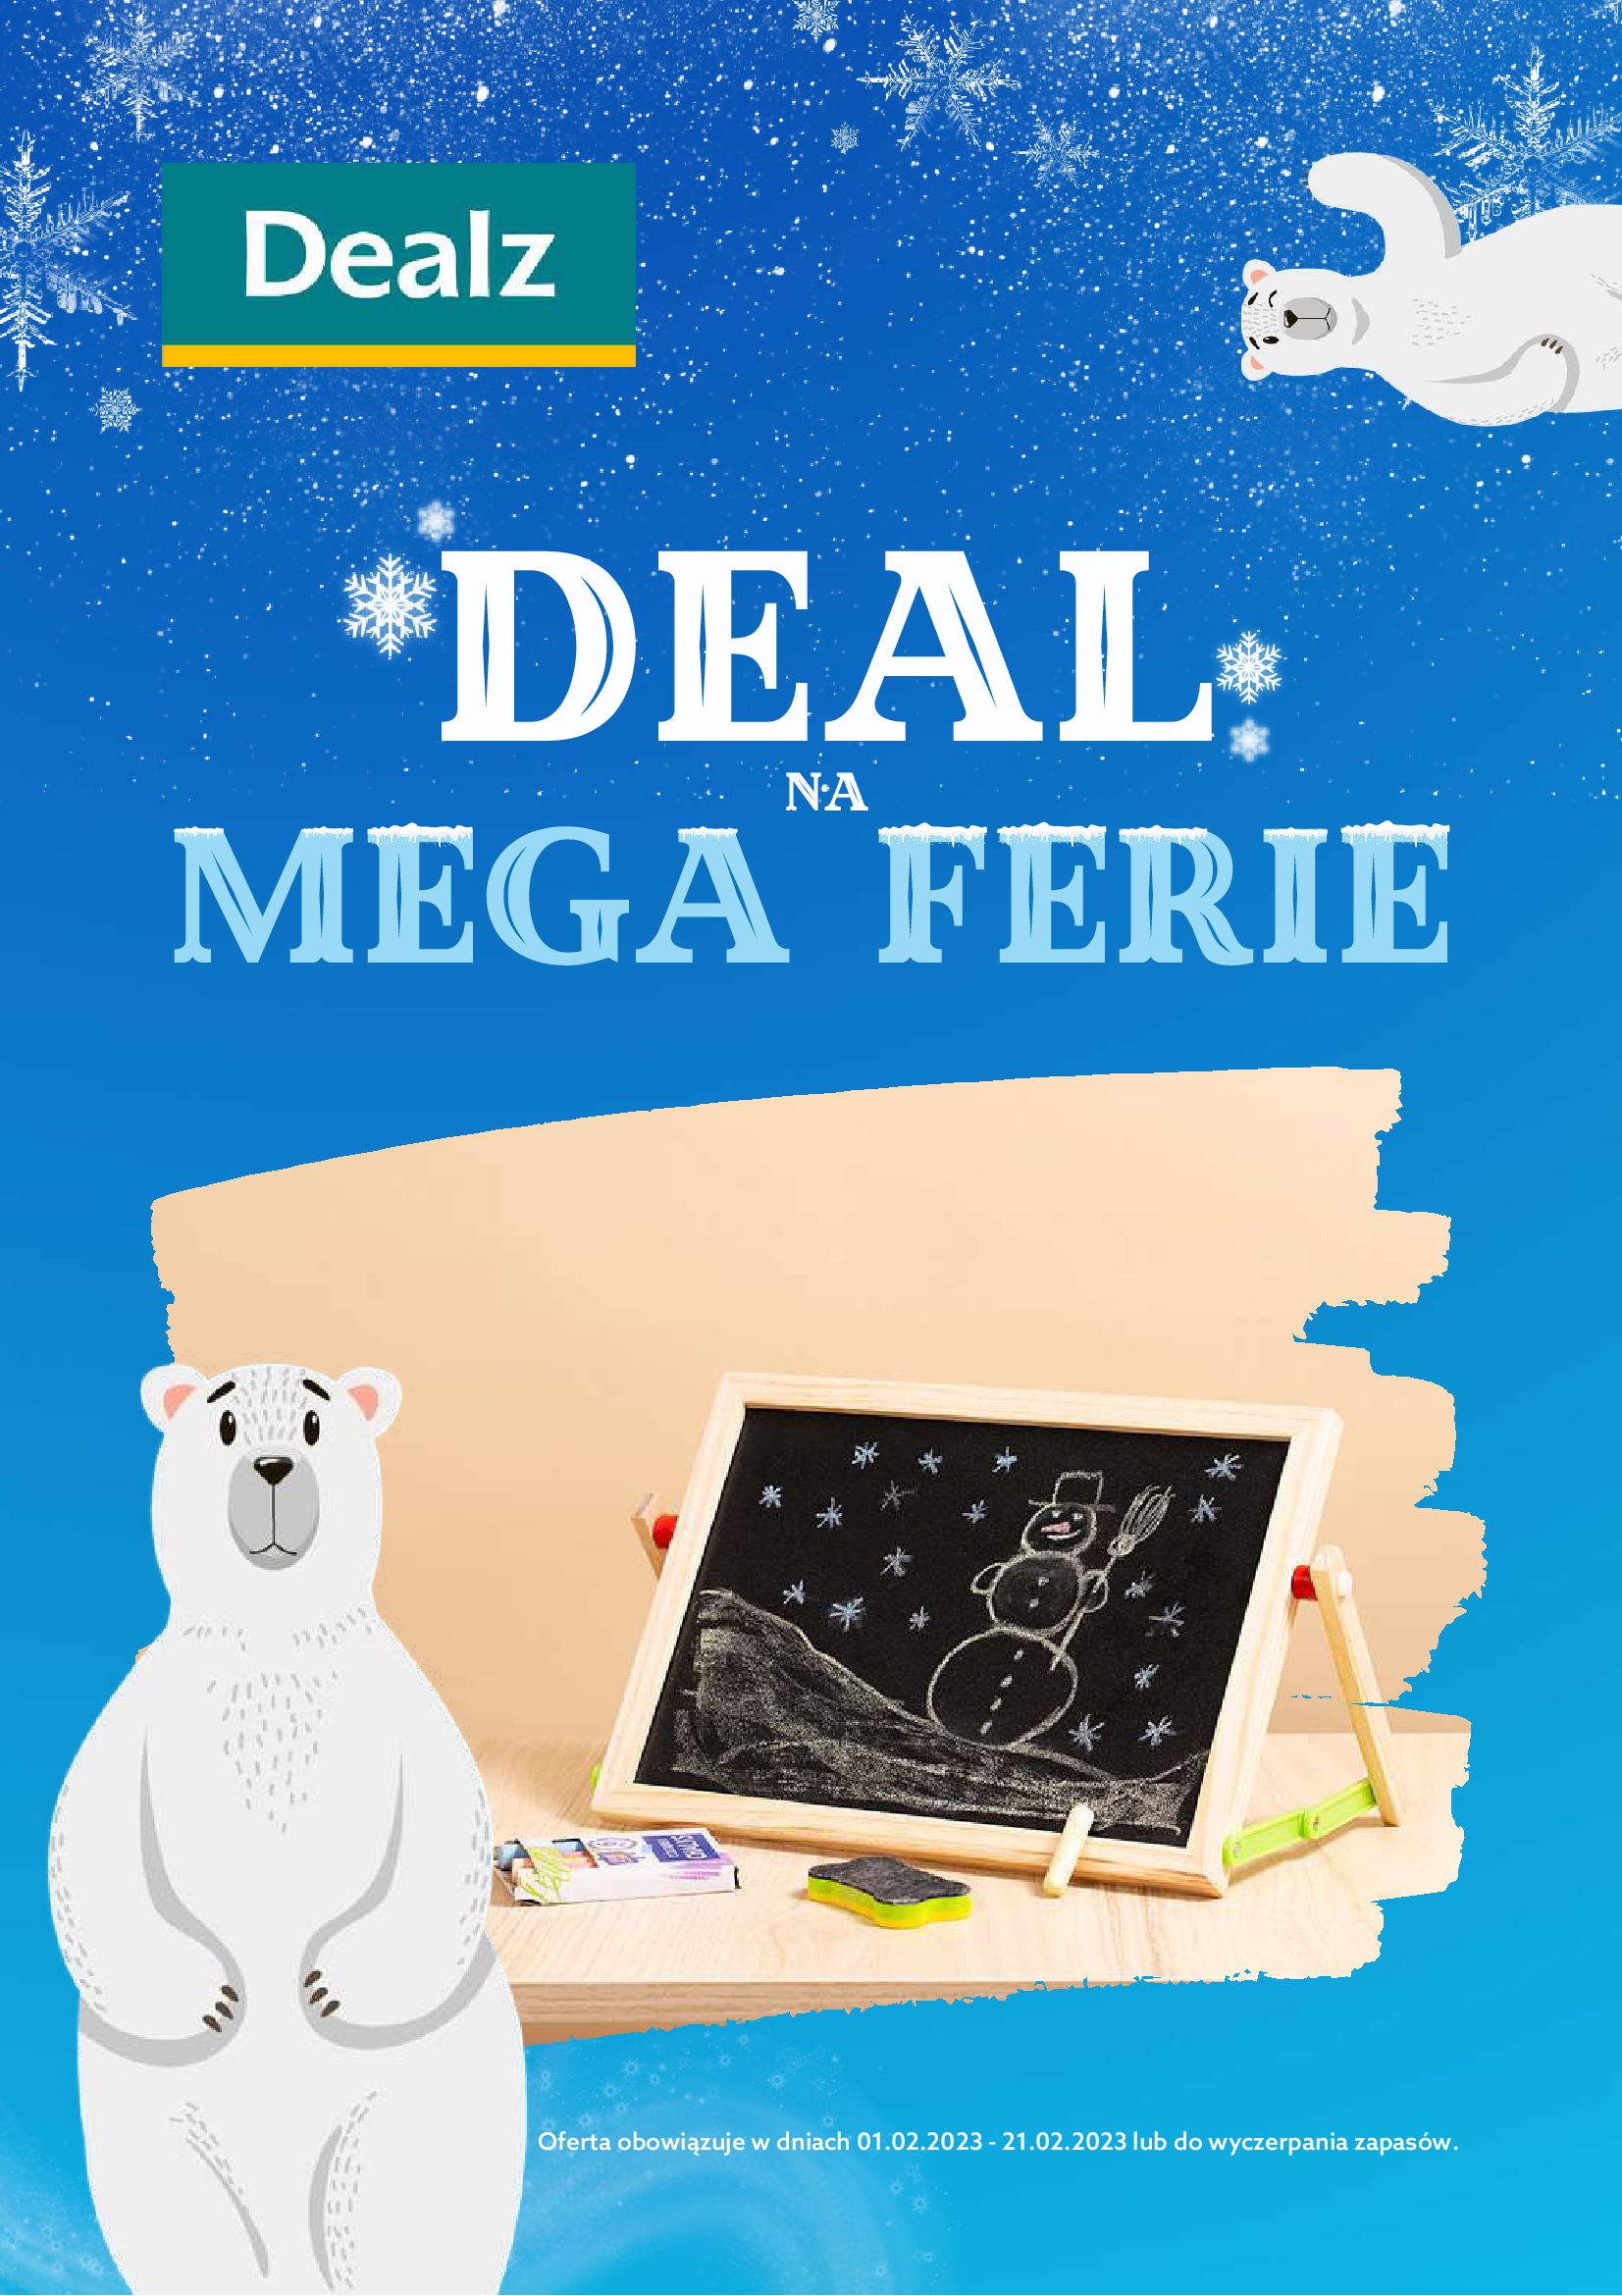 Dealz :  Gazetka Dealz - Deal na mega ferie 31.01.2023